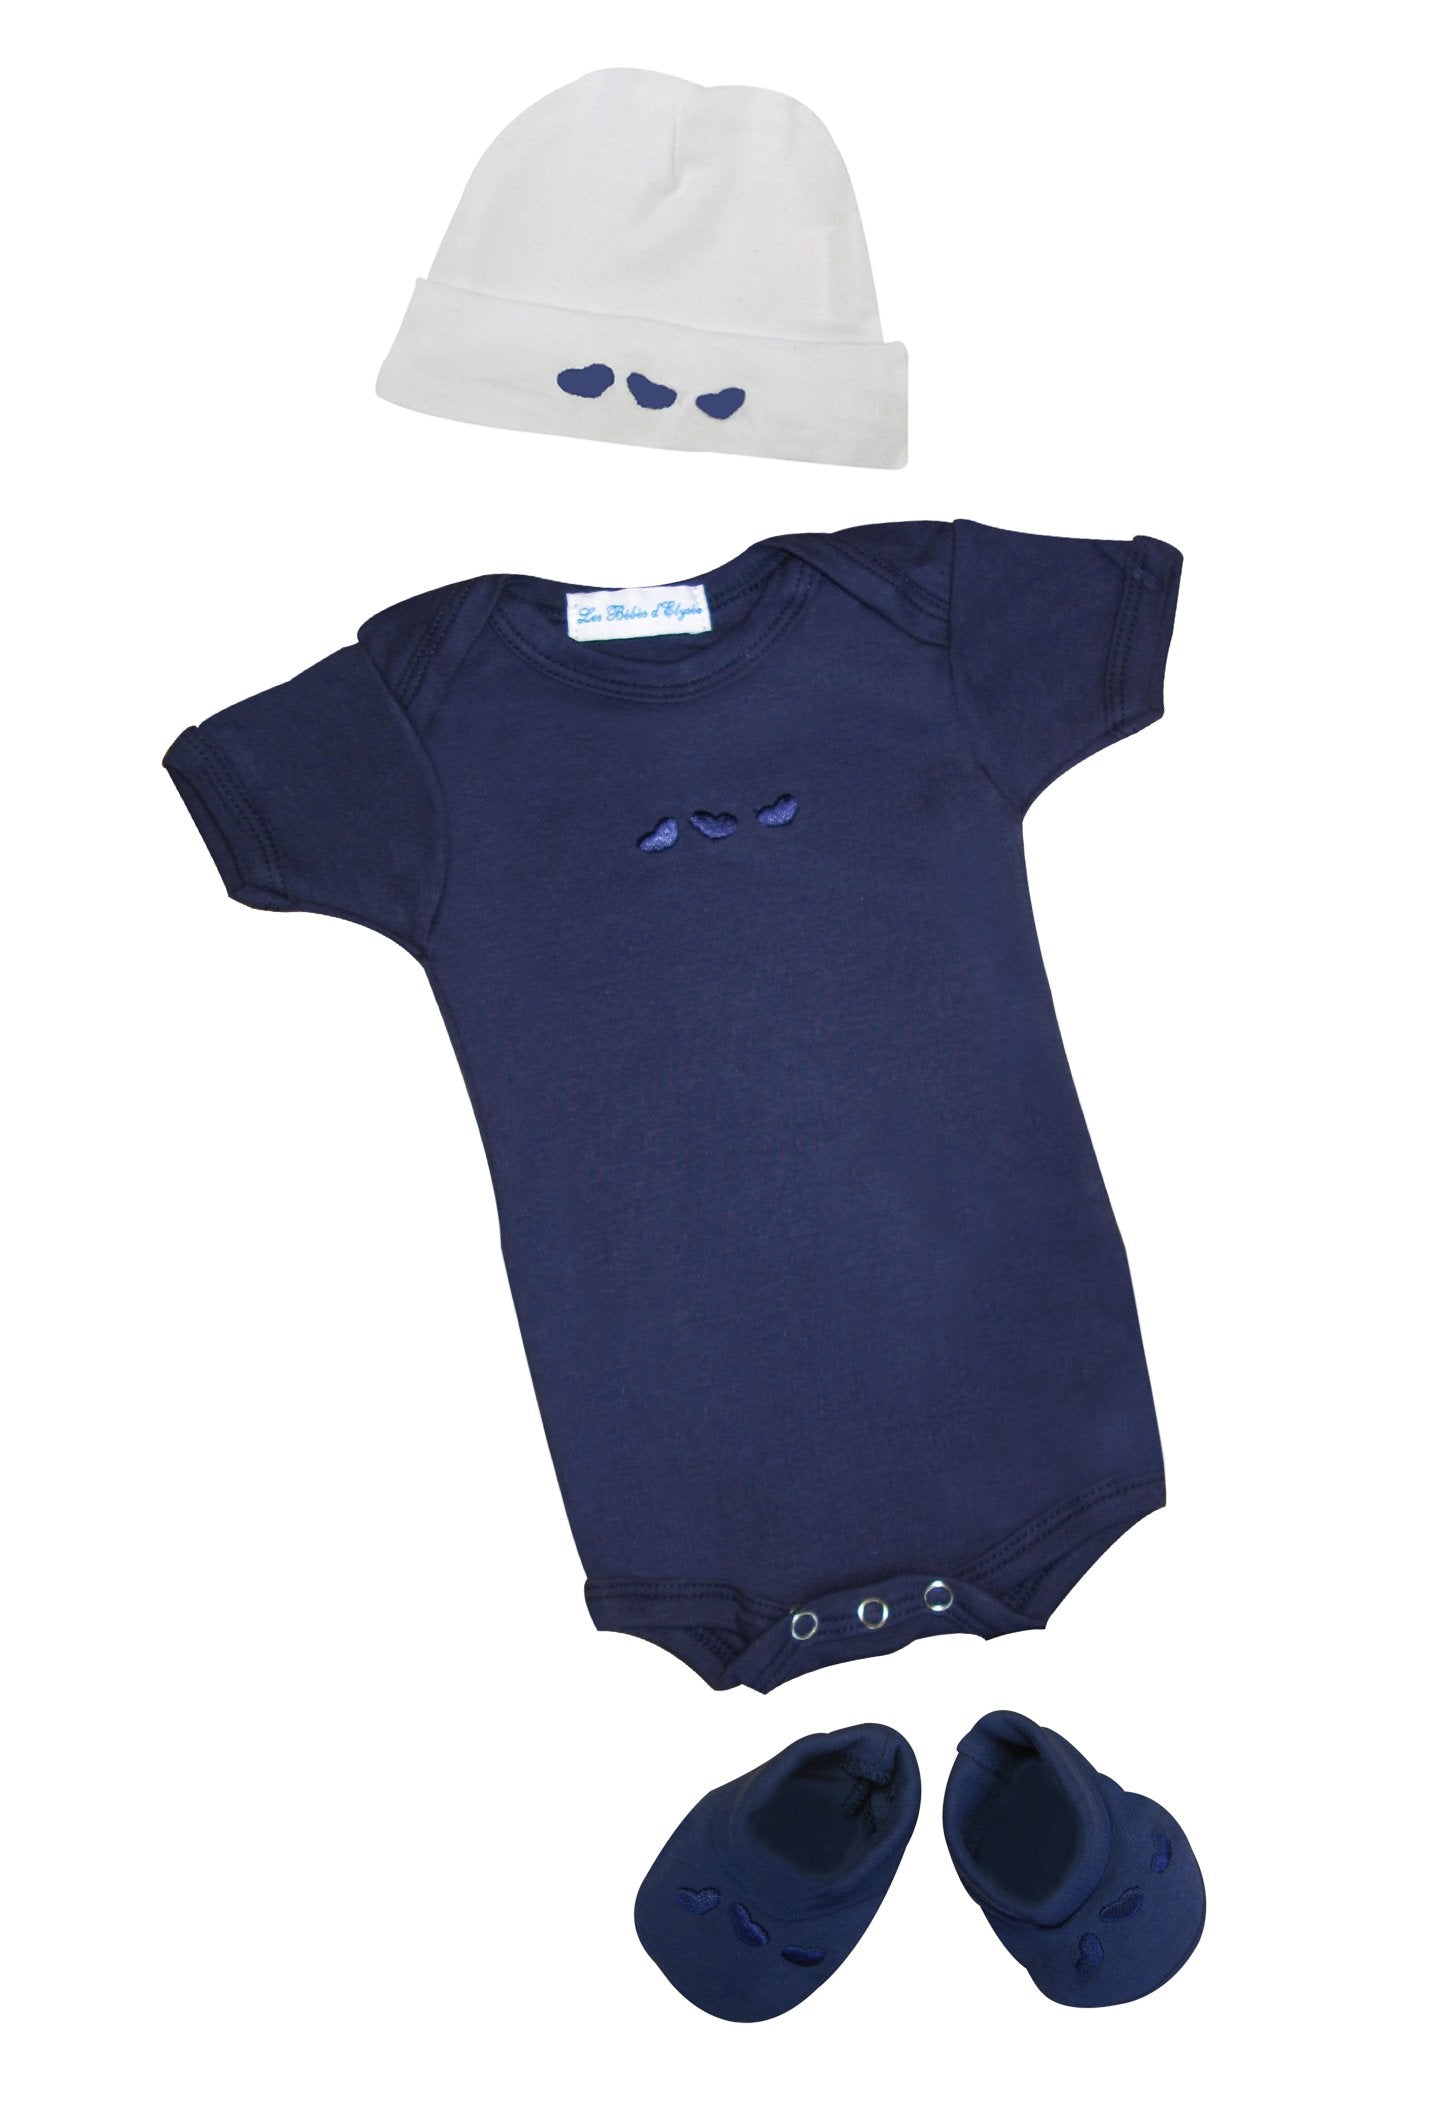 Baby Toddler Clothing Ensemble Bebe Naissance Coton Bleu Bonnet Et Chaussons Clothing Shoes Accessories Vishawatch Com